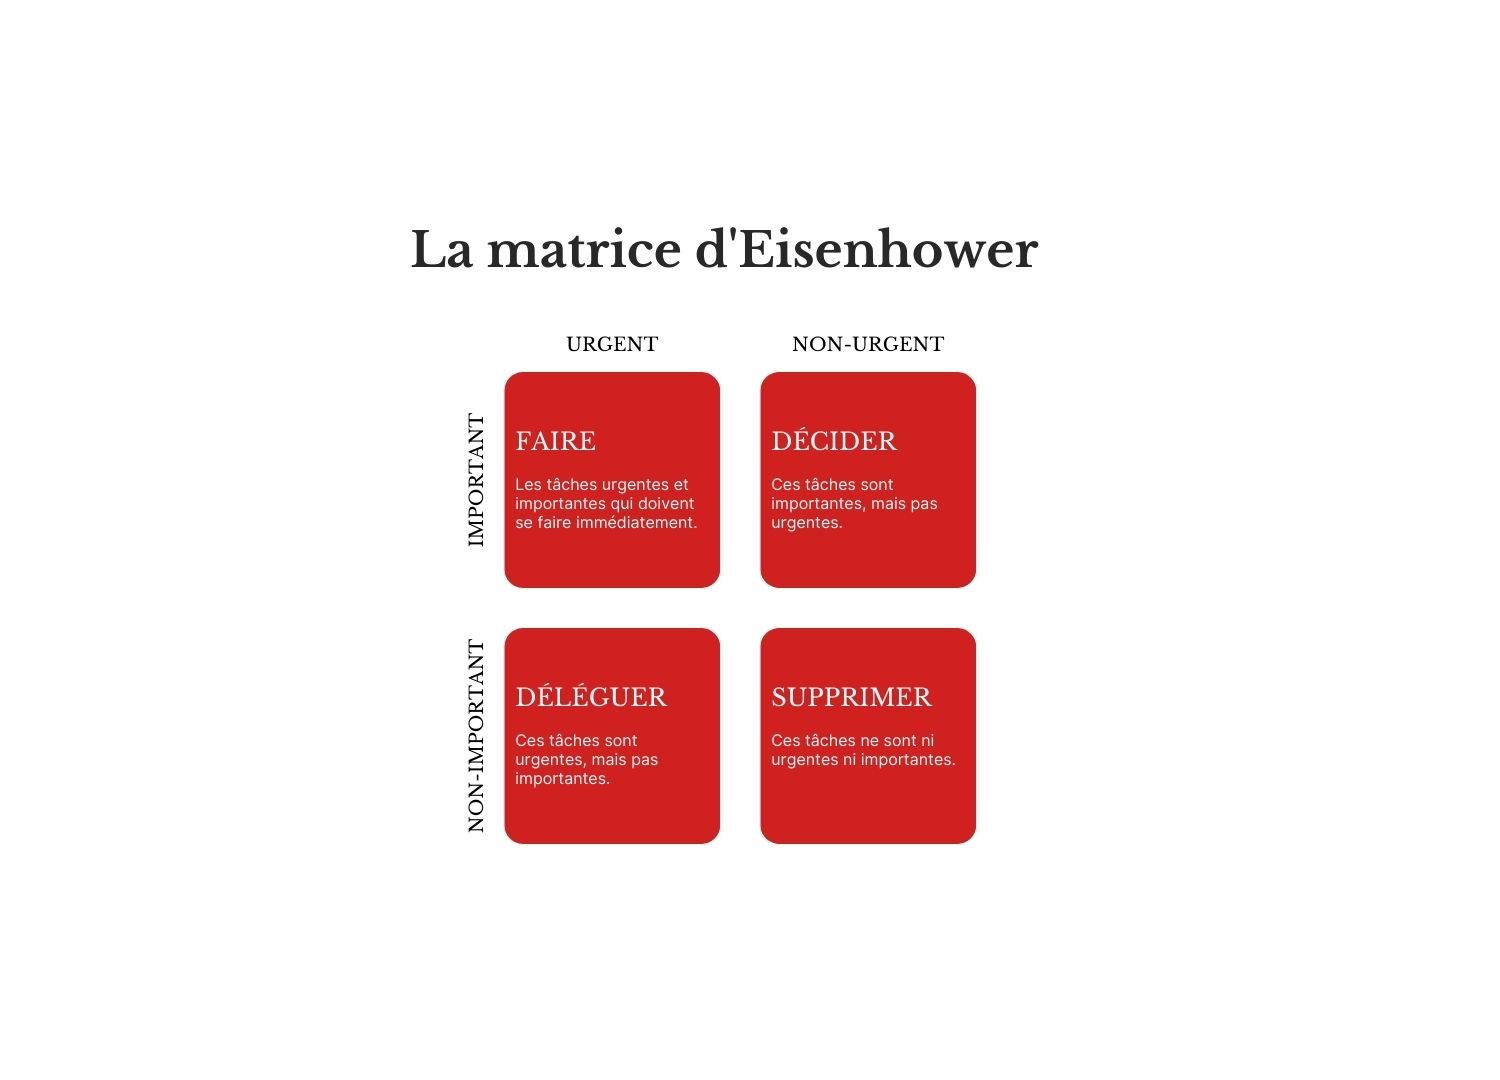 Infographie intitulée La matrice d'Eisenhower montrant les actions à entreprendre en fonction de l'urgence et de l'importance des tâches.